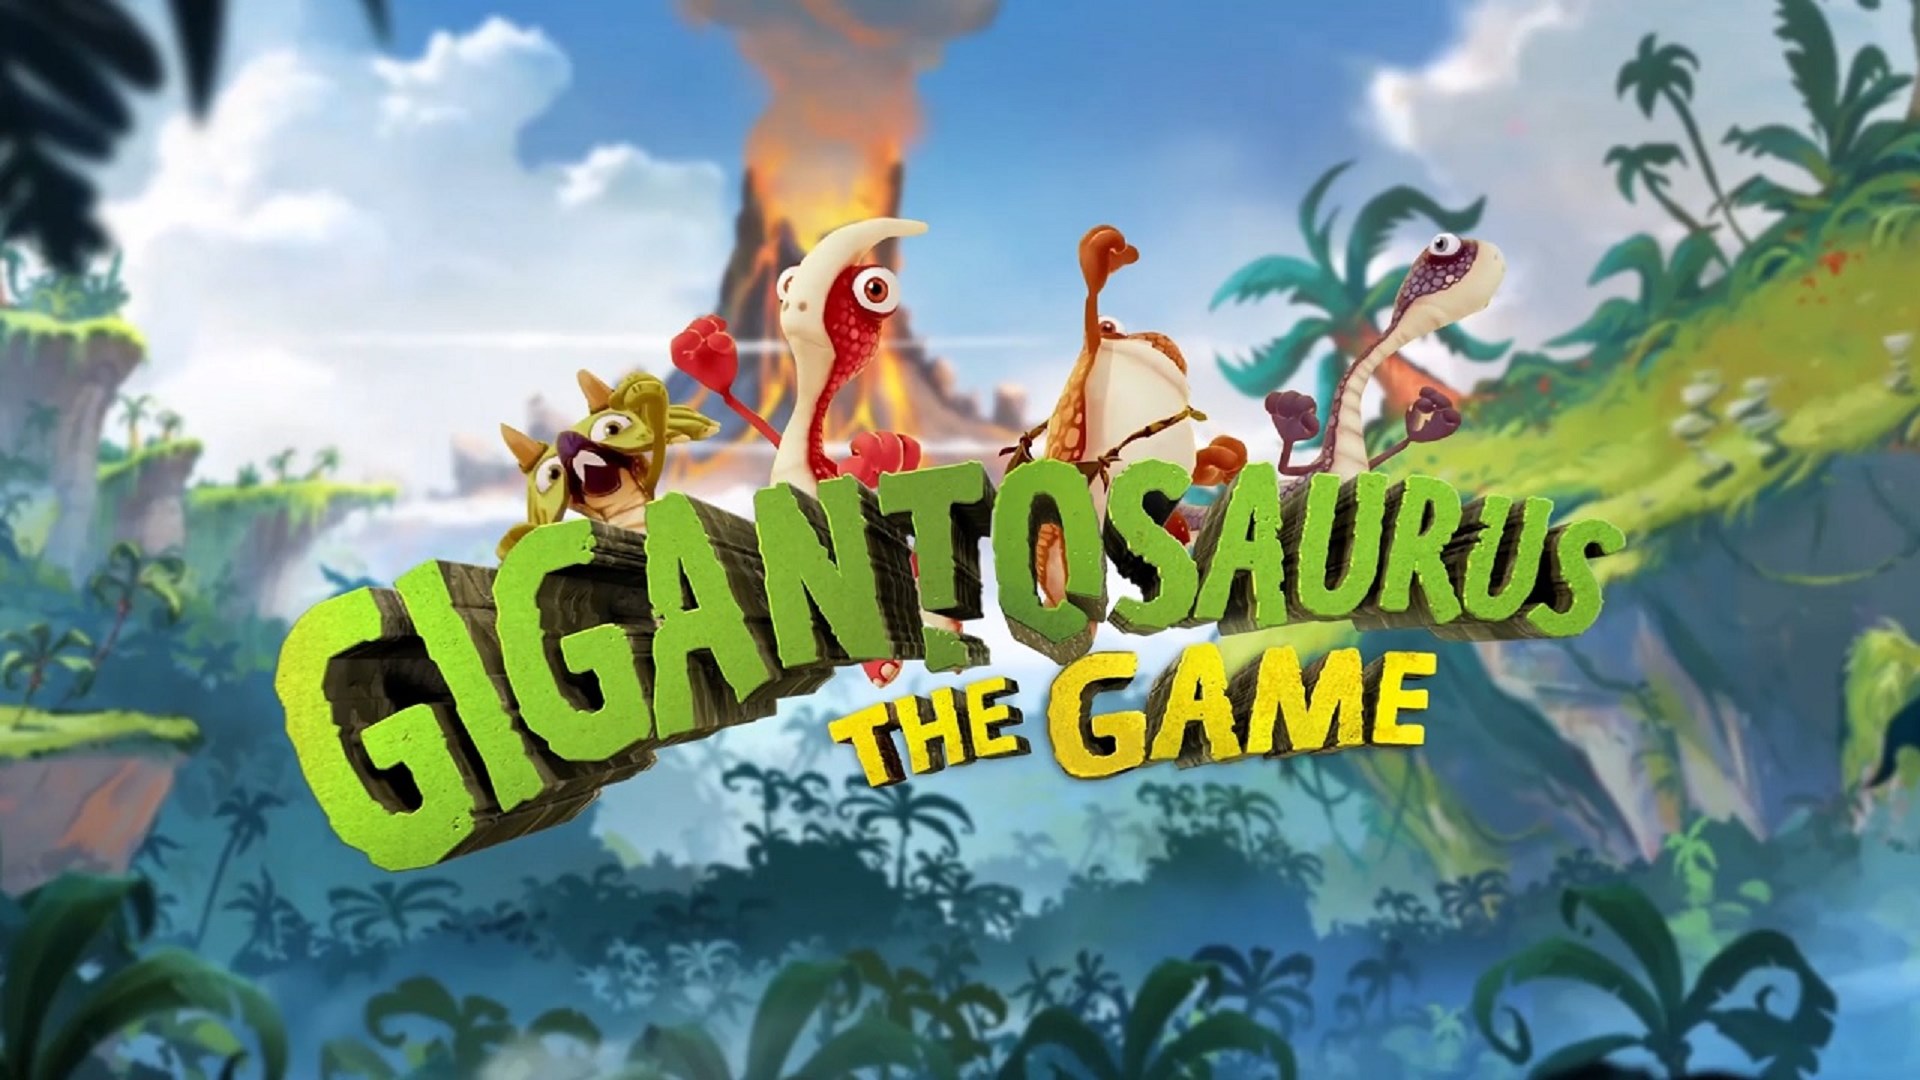 Gigantosaurus: The Game [News]